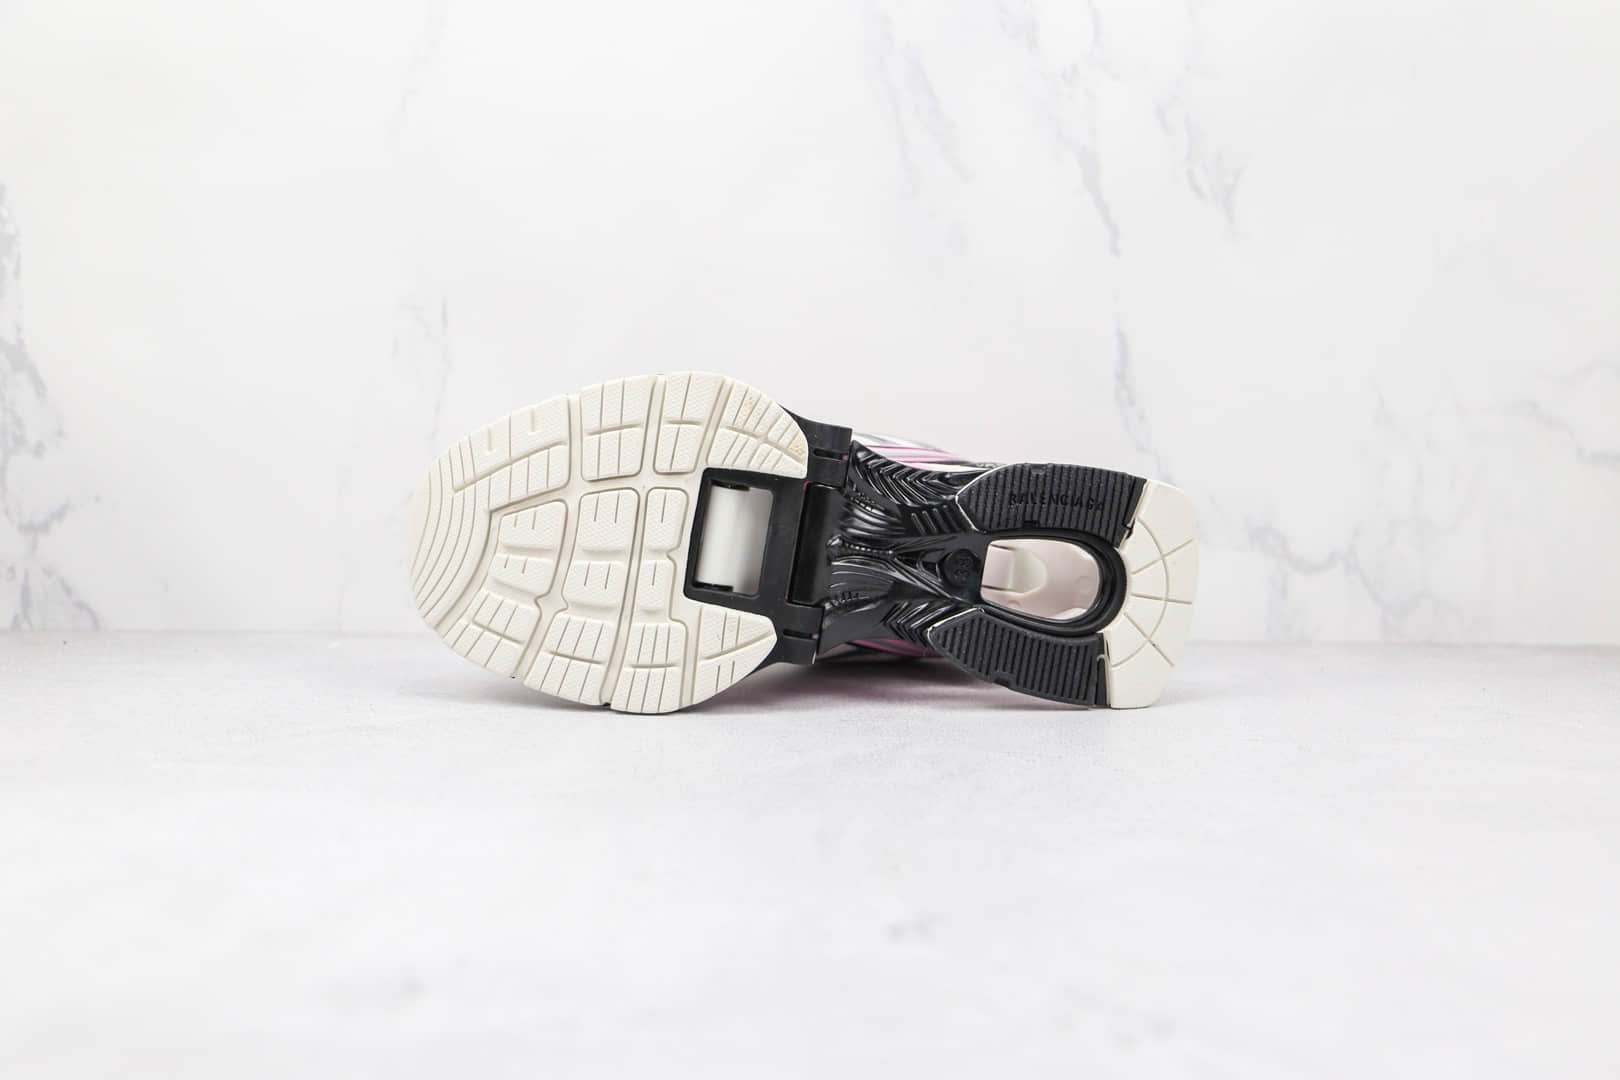 巴黎世家Balenciaga X-Pander白粉色复古增高做旧弹簧老爹鞋 - 巴黎世家弹簧鞋, 巴黎世家复古老爹鞋, 巴黎世家增高鞋